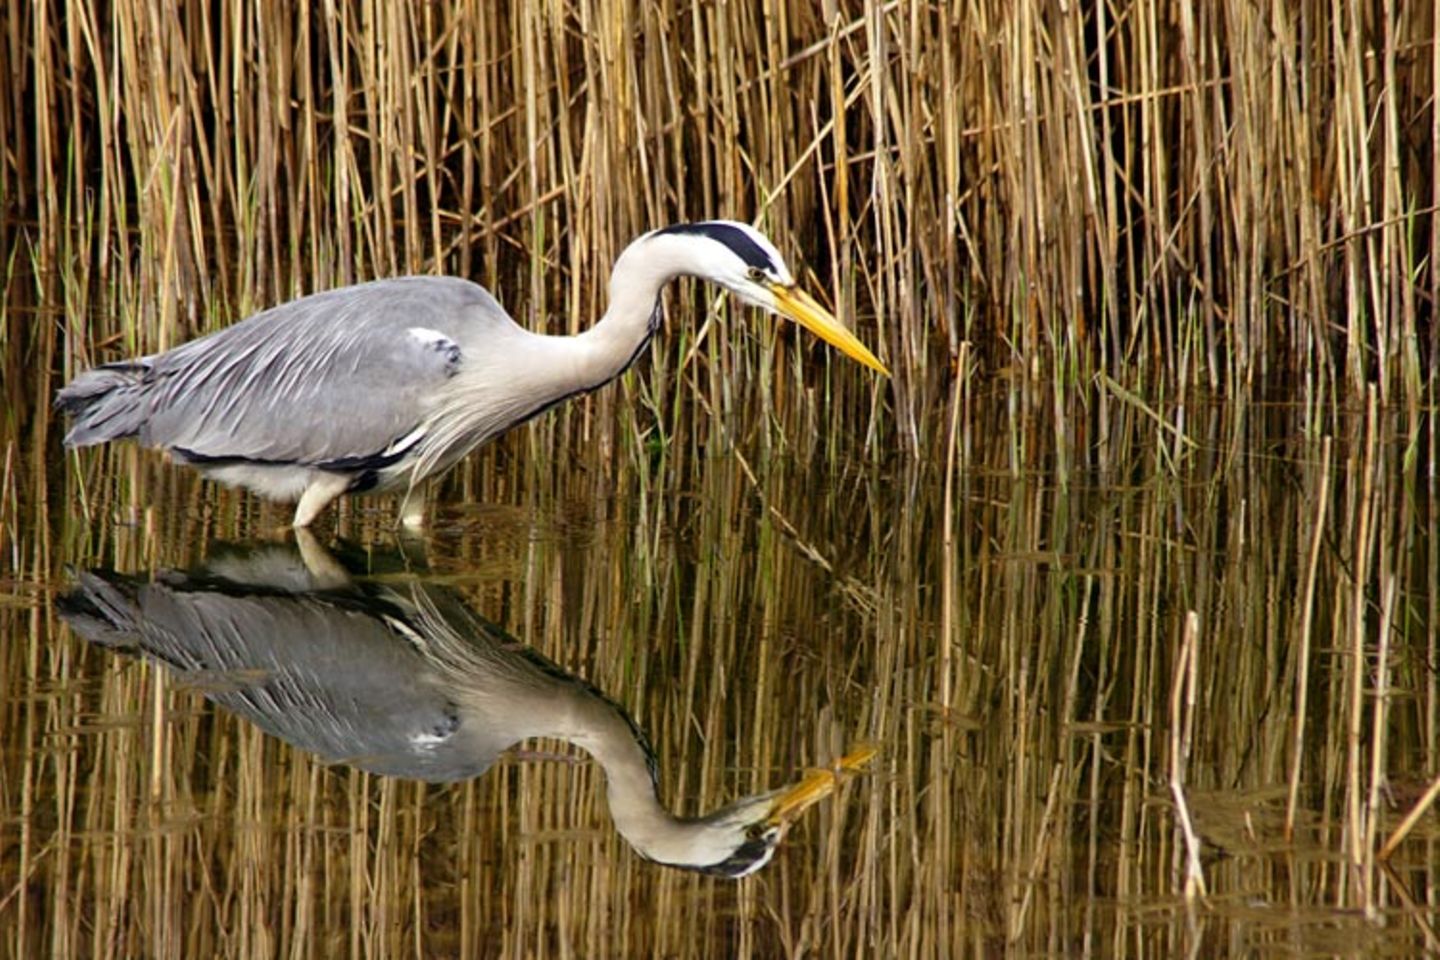 Redewendung: Um sich vor Jägern in Sicherheit zu bringen, gehen Wasservögel in die Binsen. Im hohen Schilfgras bleiben sie unentdeckt